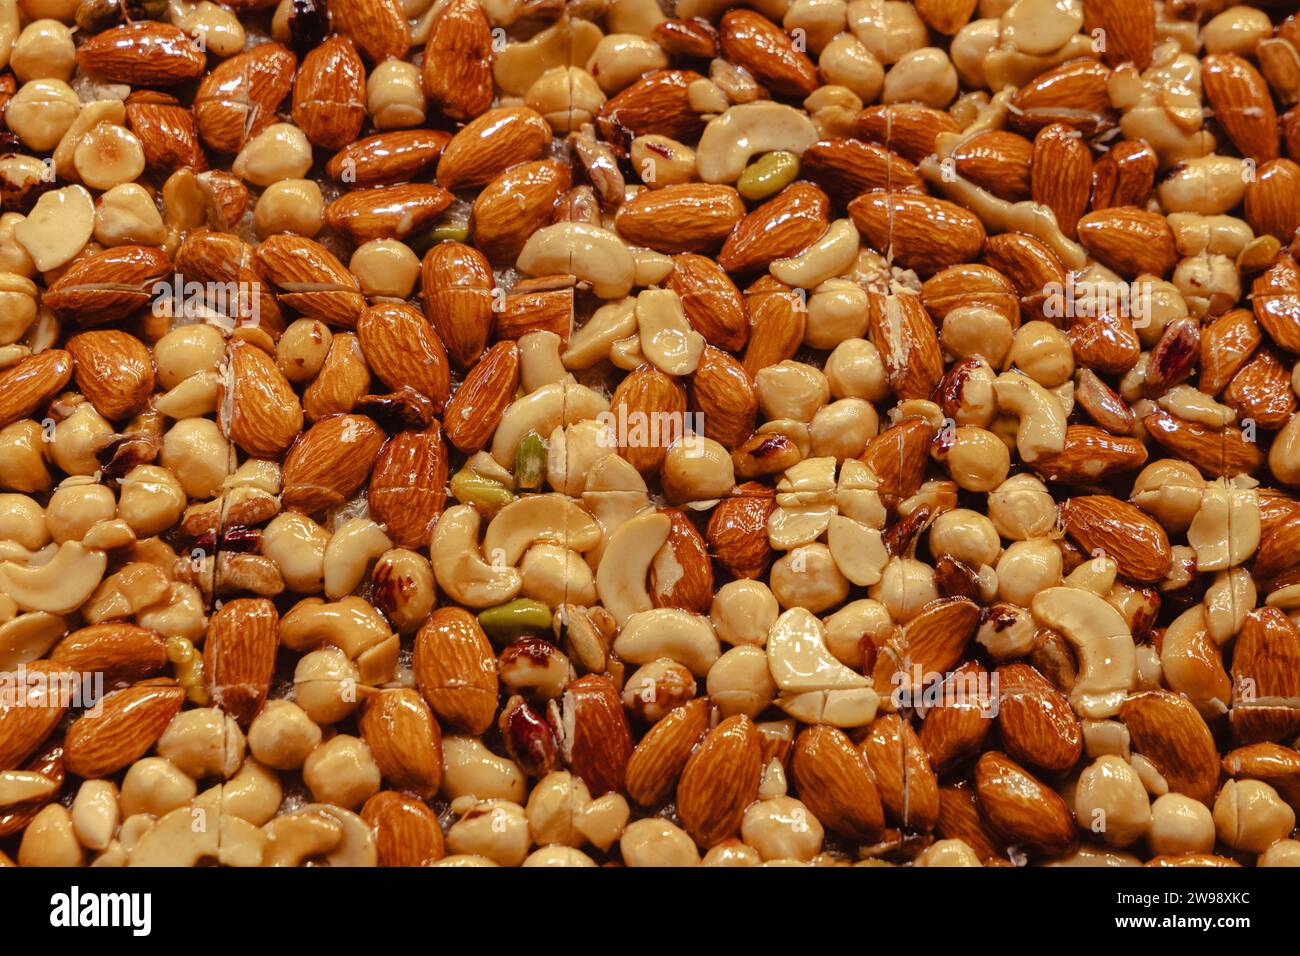 Gros plan des délices turcs faits avec différents mélanges de noix dans le Bazaar aux épices (bazar égyptien - Mısır Çarşısı) à Istanbul, Turquie Banque D'Images